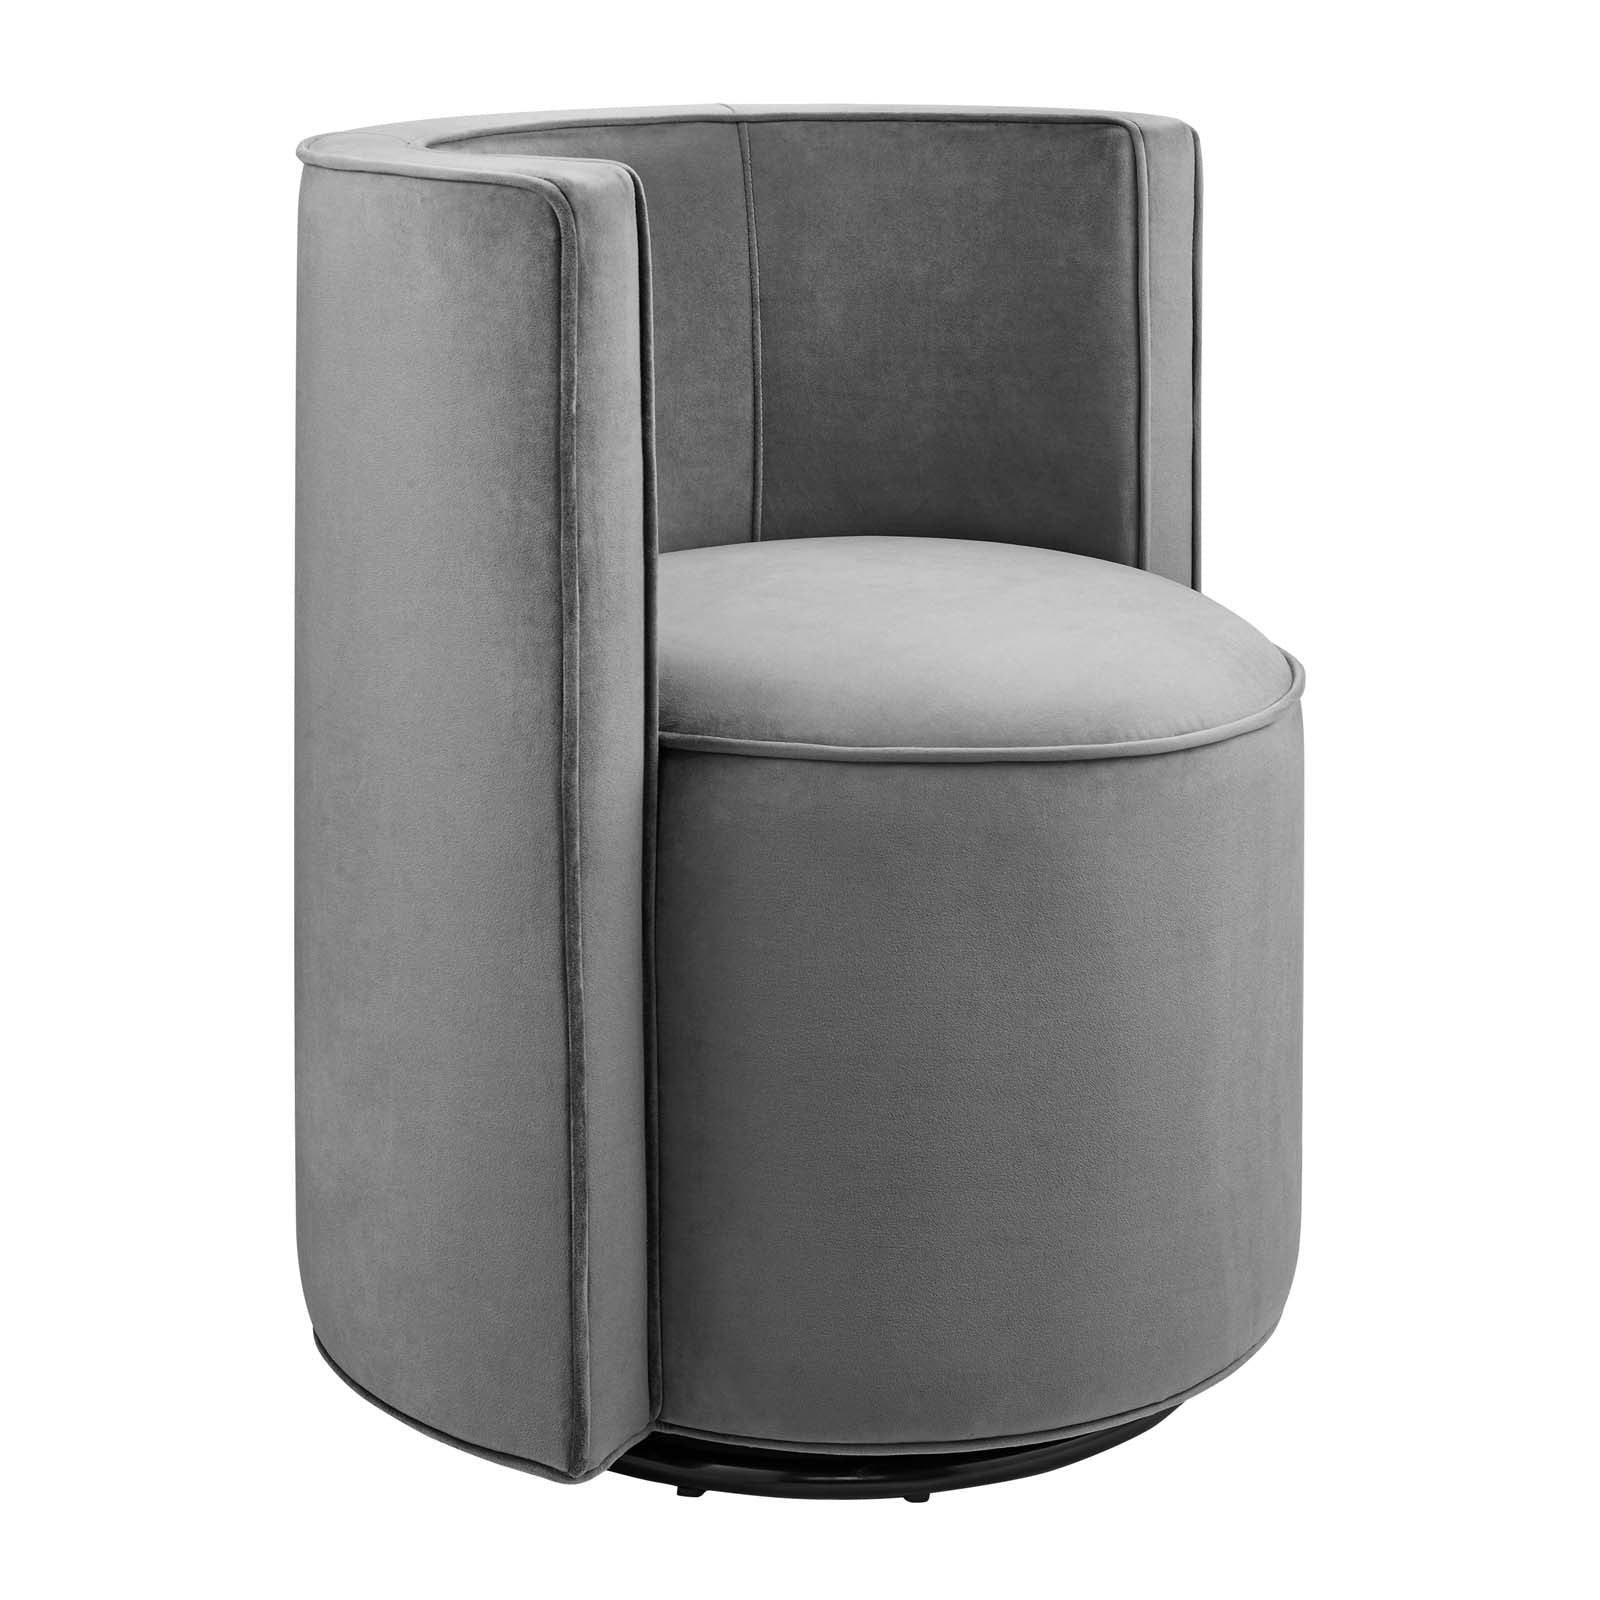 Della Performance Velvet Fabric Swivel Chair - East Shore Modern Home Furnishings